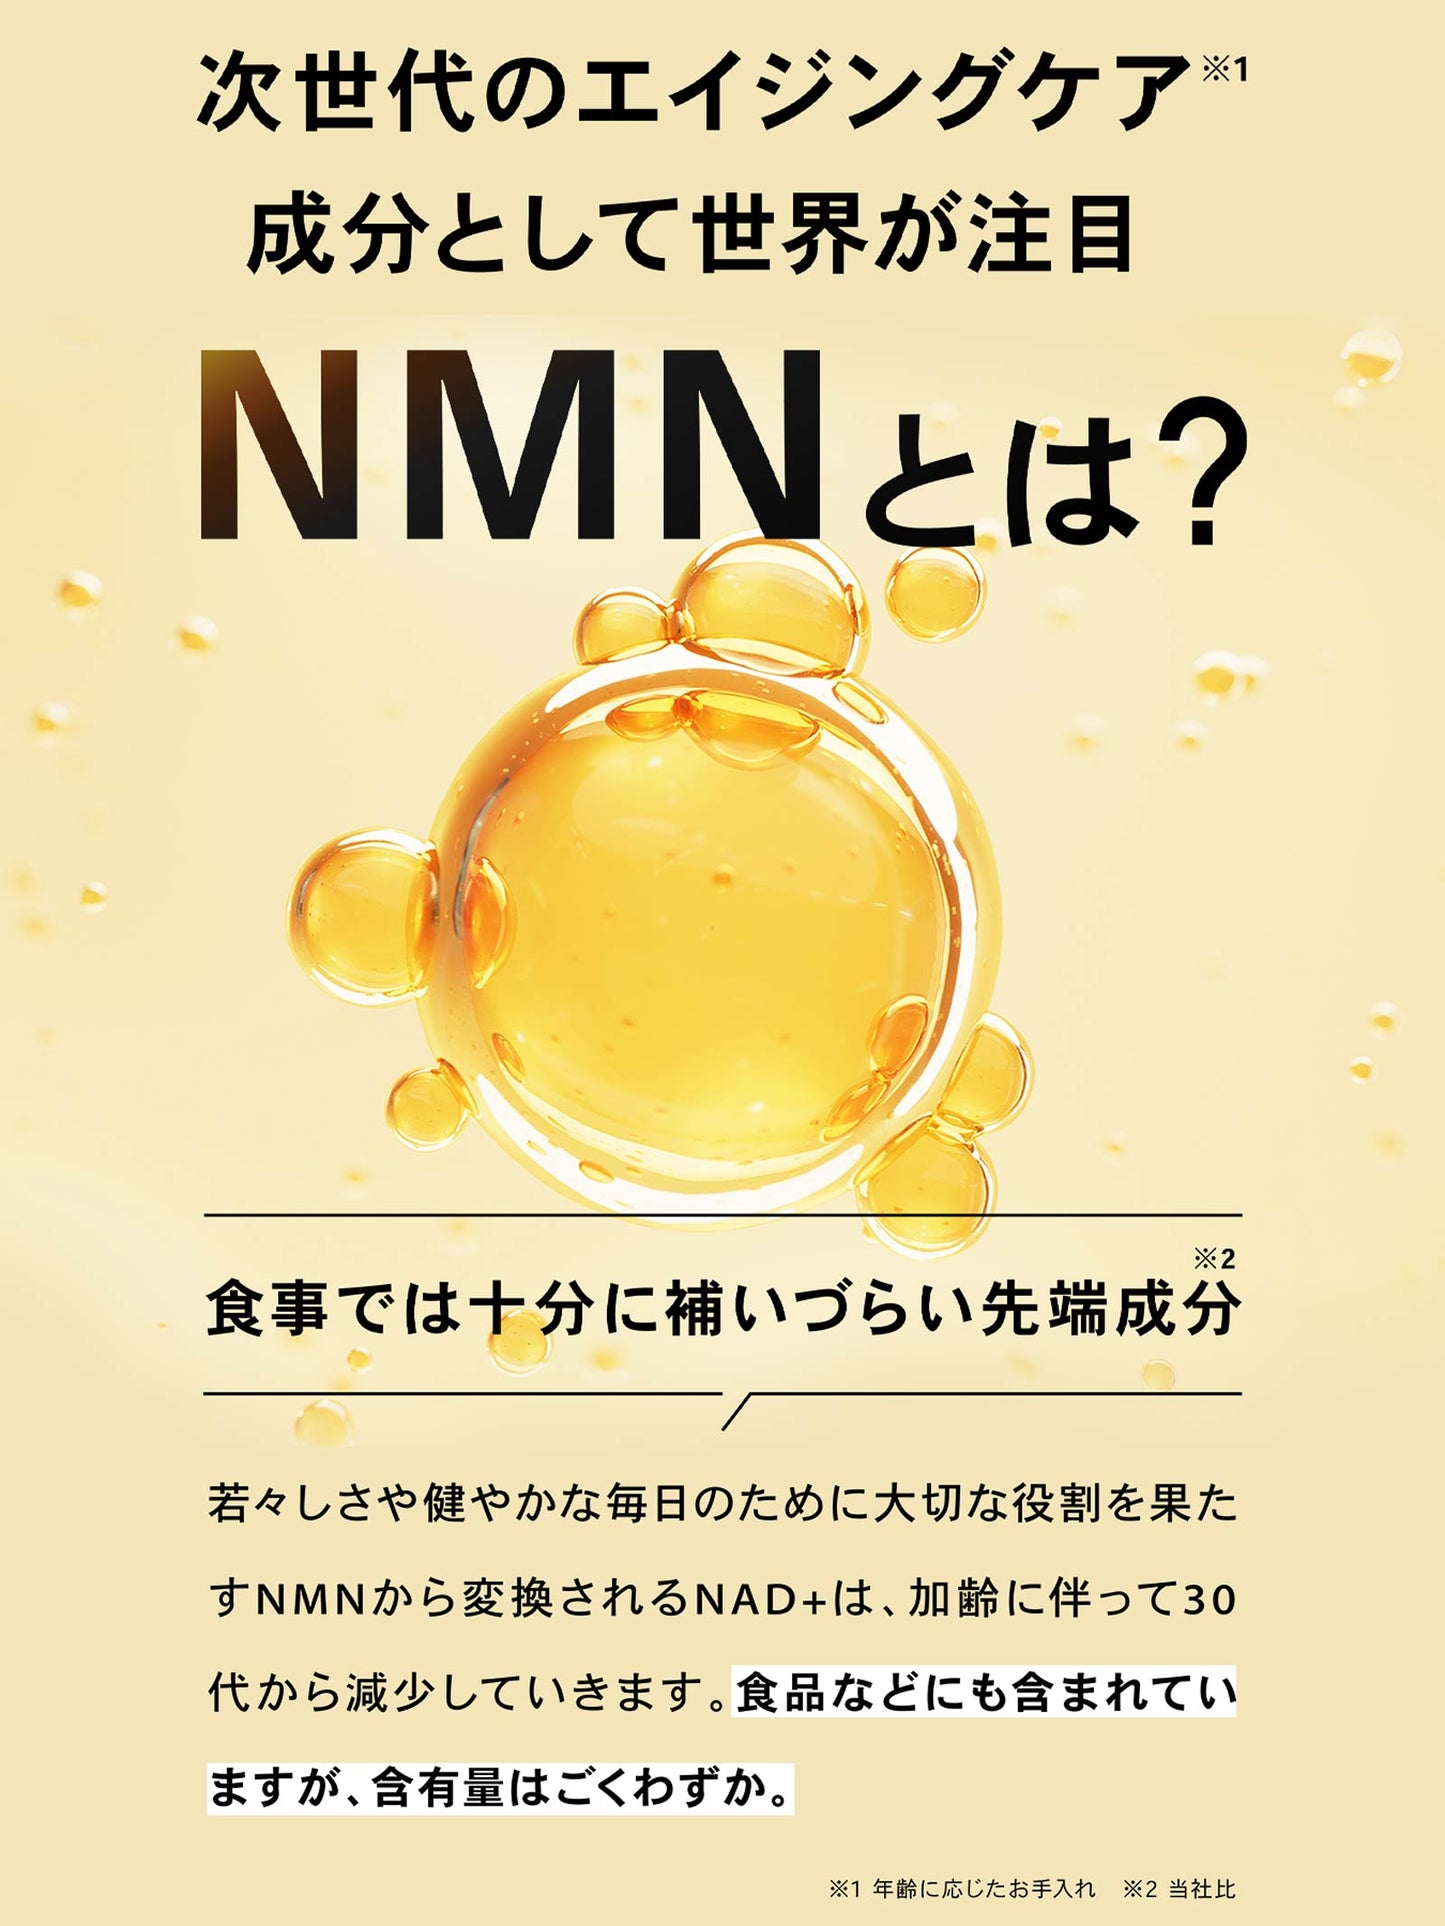 B+NMN 1箱30日分 NMN7500mg/ビタミンD 75,000IU配合